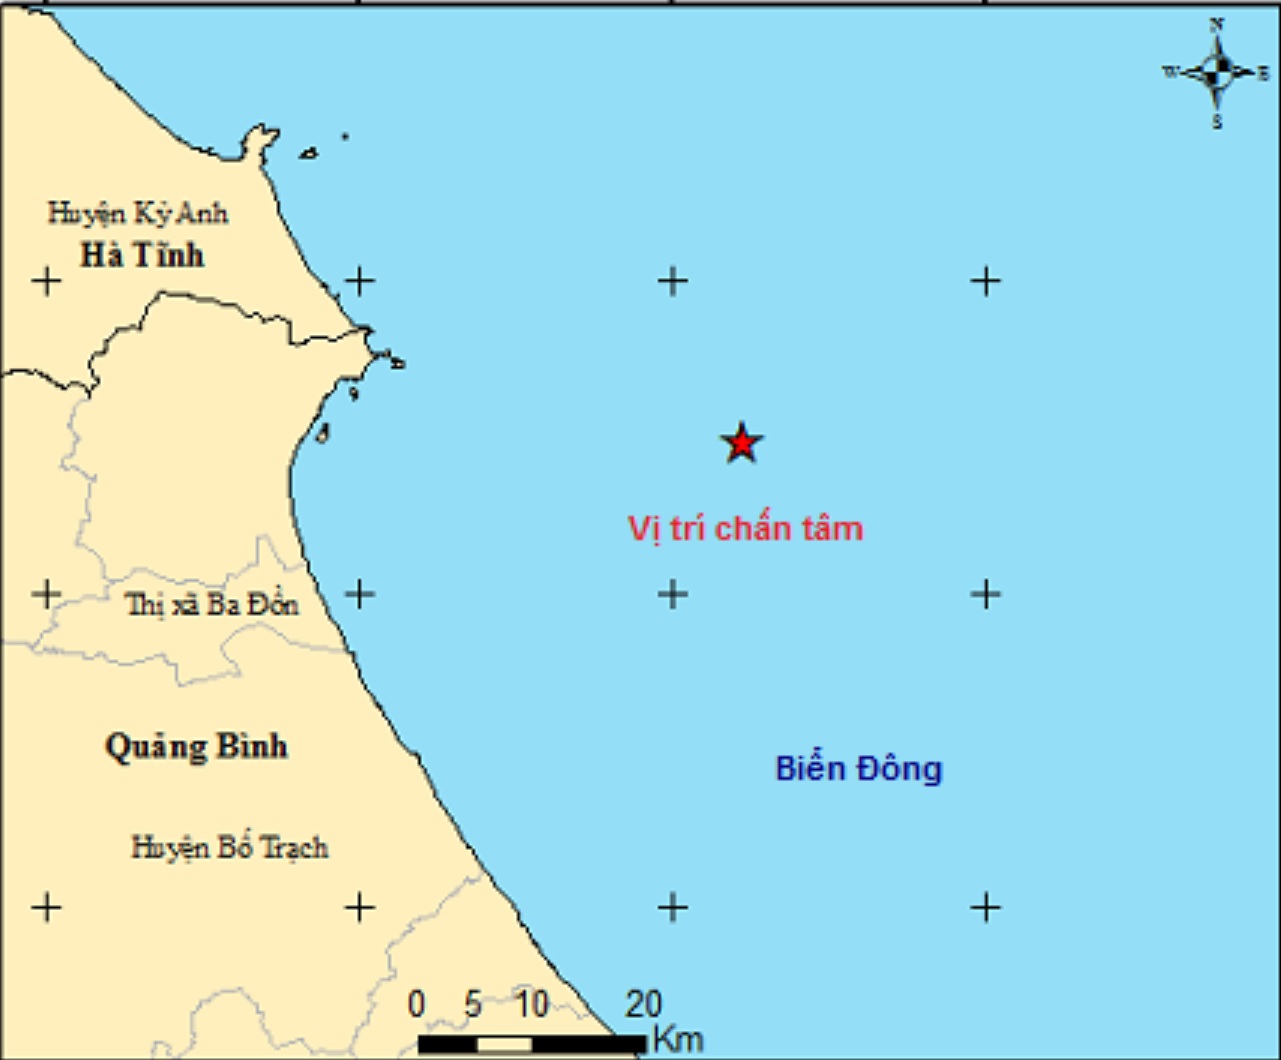 Biển Đông xảy ra động đất mạnh 3 độ richter, sang tuần khả năng hứng bão - 1